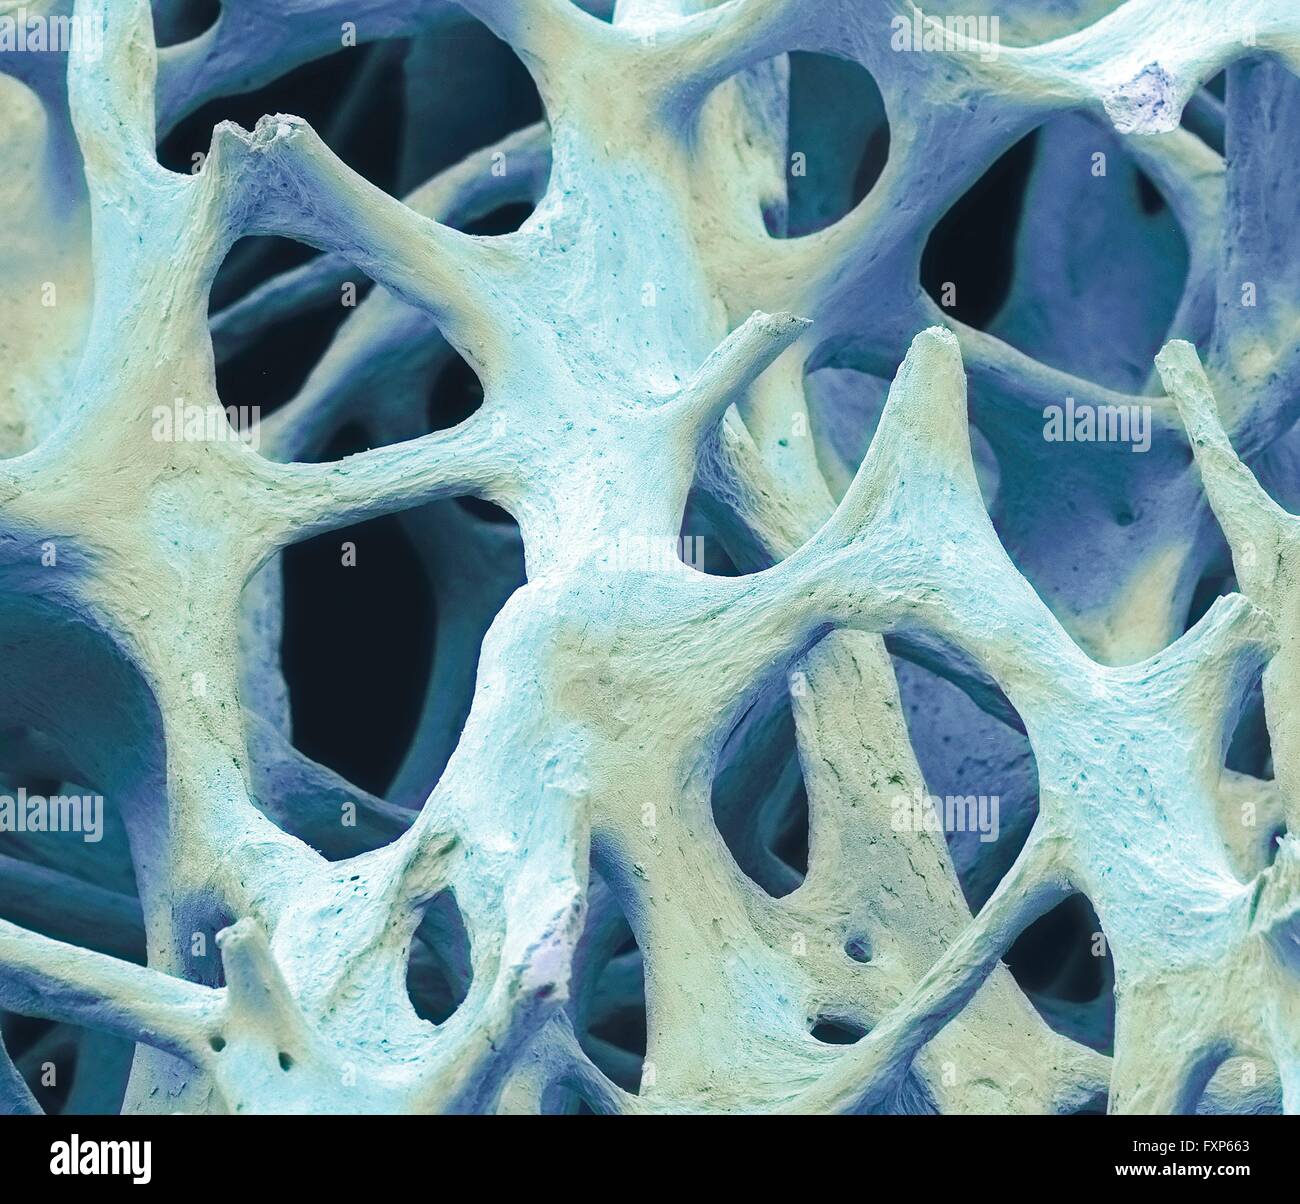 Il tessuto osseo. Color scanning electron microfotografia (SEM) di spugnoso spugnoso (osso). Il tessuto osseo può essere sia (corticale compatta) spugnoso o. L'osso corticale di solito rende l'esterno dell'osso, mentre l'osso spugnoso si trova all'interno. Osso spongioso è caratterizzato da una disposizione a nido d'ape, comprendente una rete di trabecole (a forma di asta di tessuto). Queste strutture forniscono sostegno e forza per l'osso. Gli spazi all'interno di questo tessuto contengono midollo osseo (non visibile), un sangue di sostanza di formazione. Ingrandimento: x40 quando stampata 10cm di larghezza. Foto Stock